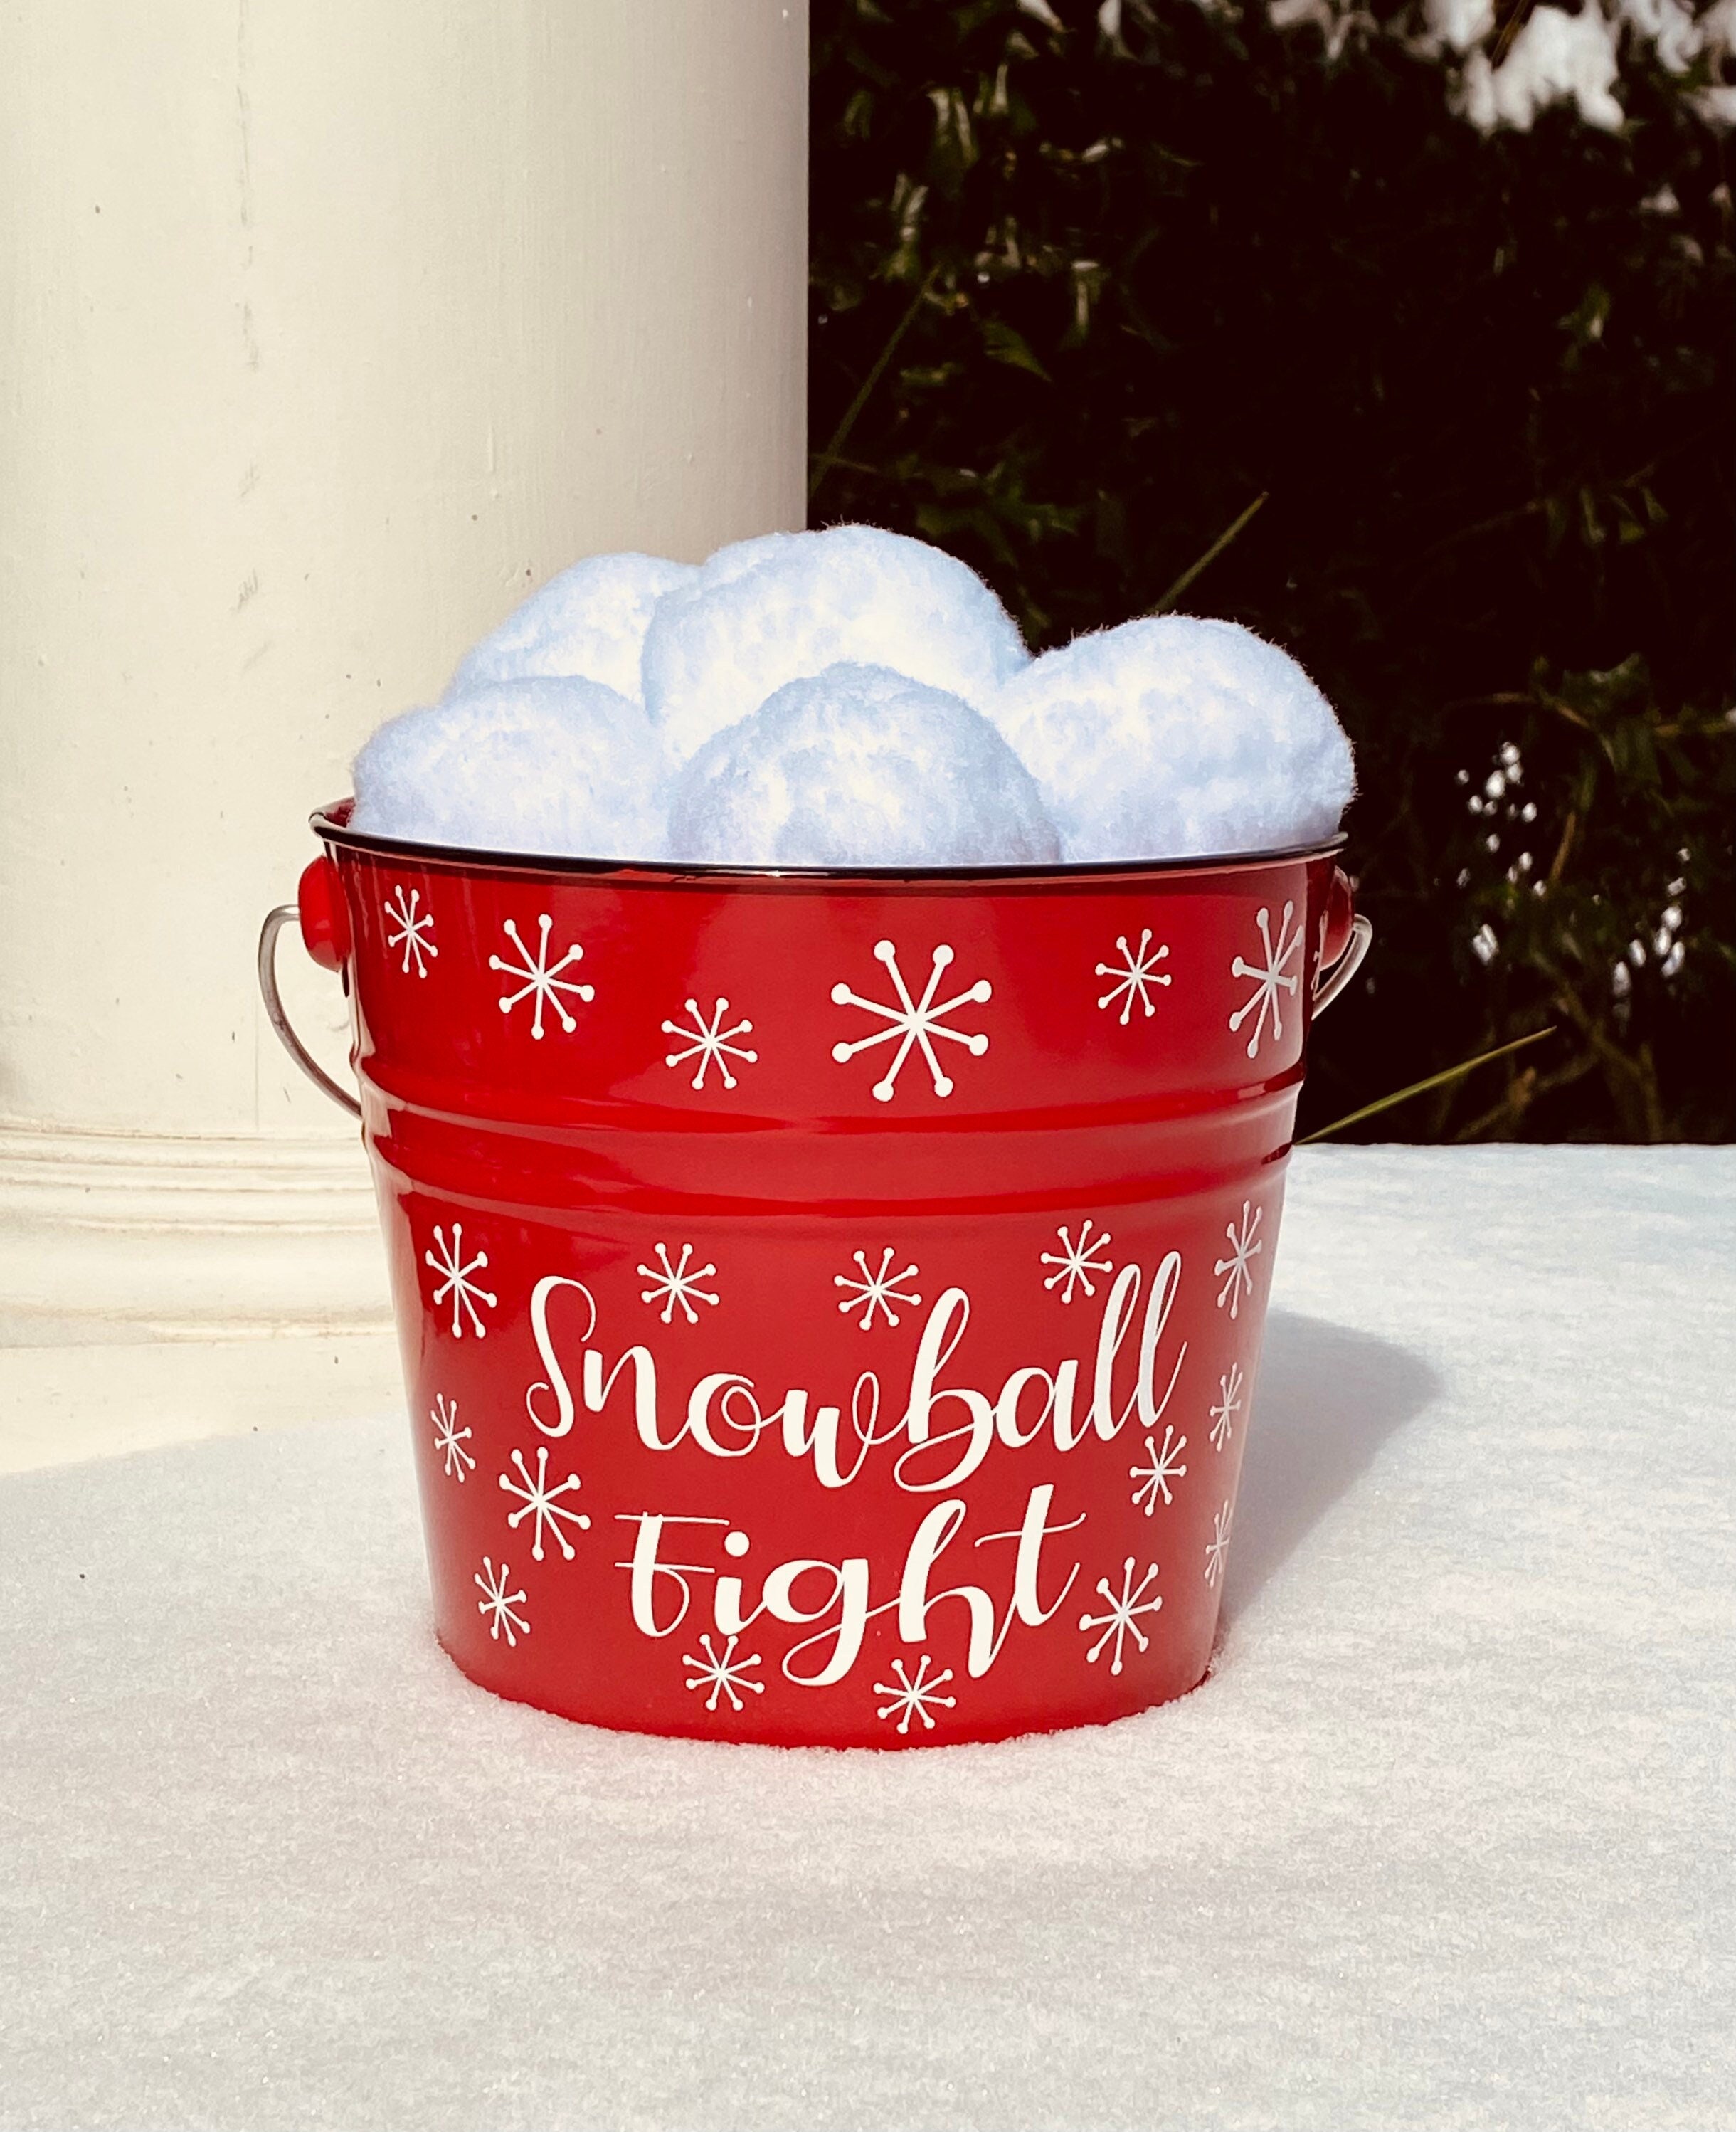 S/10 Indoor Snowballs in Gift Box